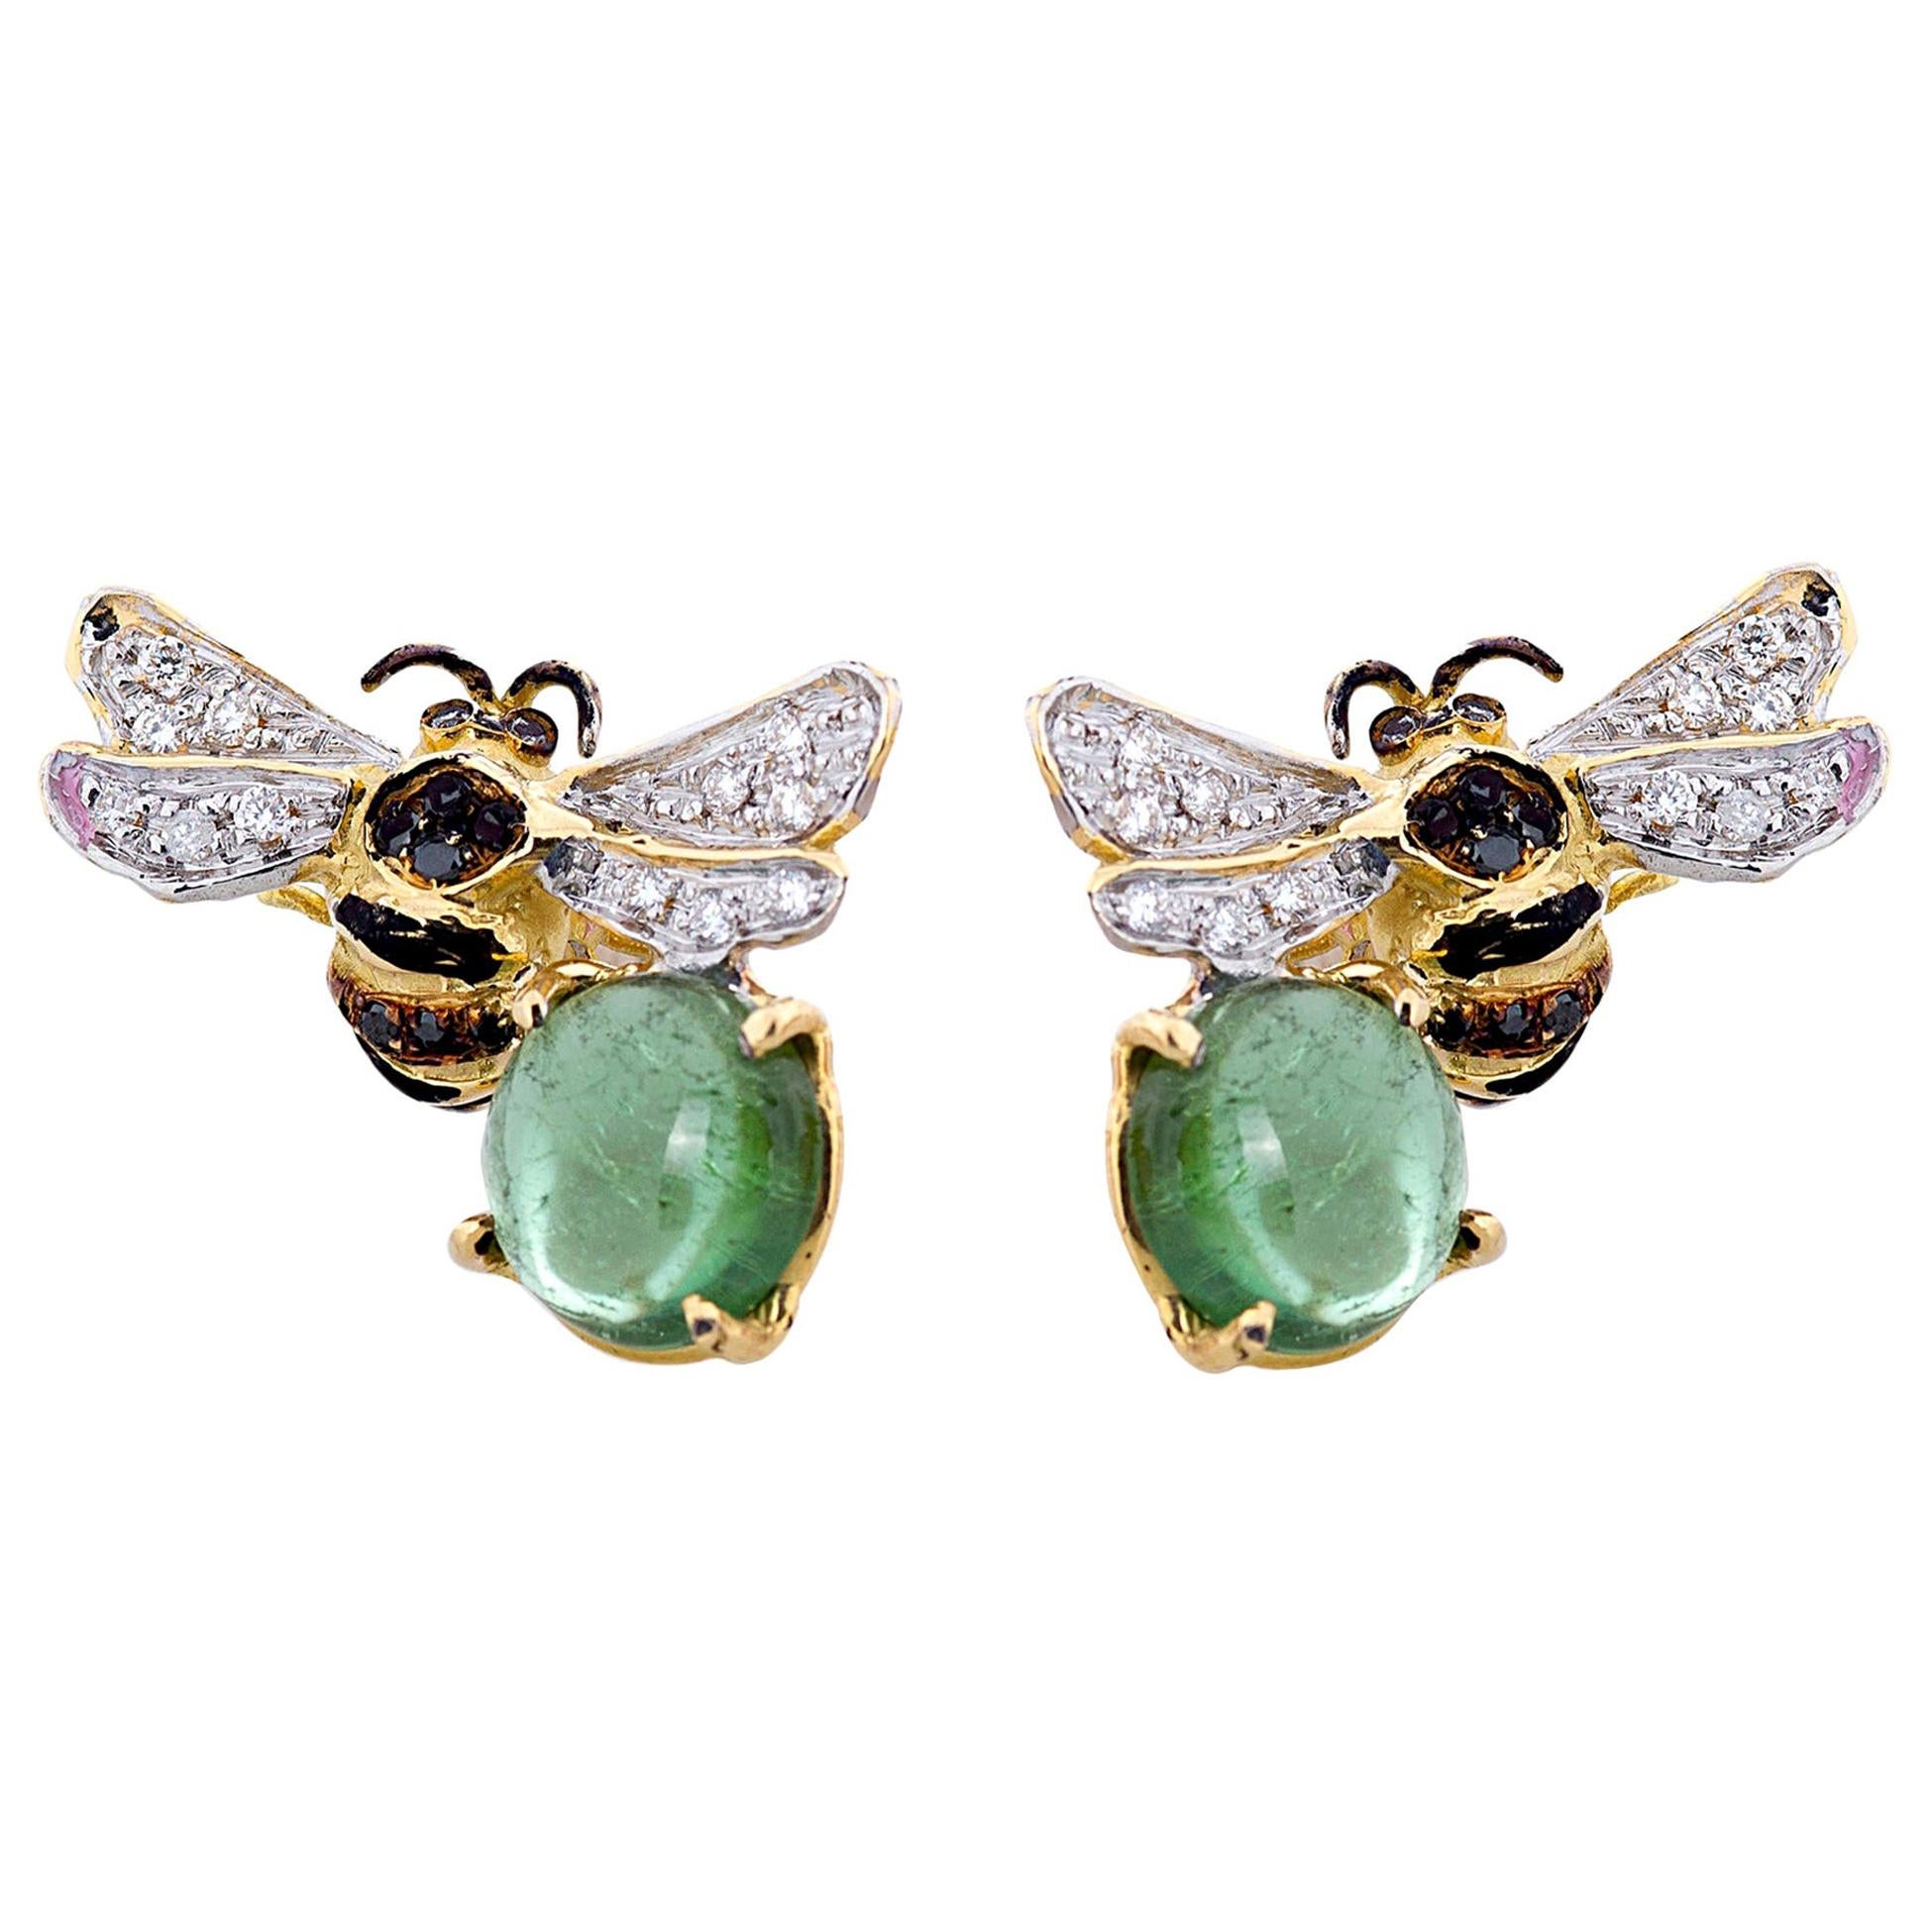 Rossella Ugolini Bienen inspirierte Ohrstecker aus 18 Karat Gold mit Diamanten und grünem Turmalin